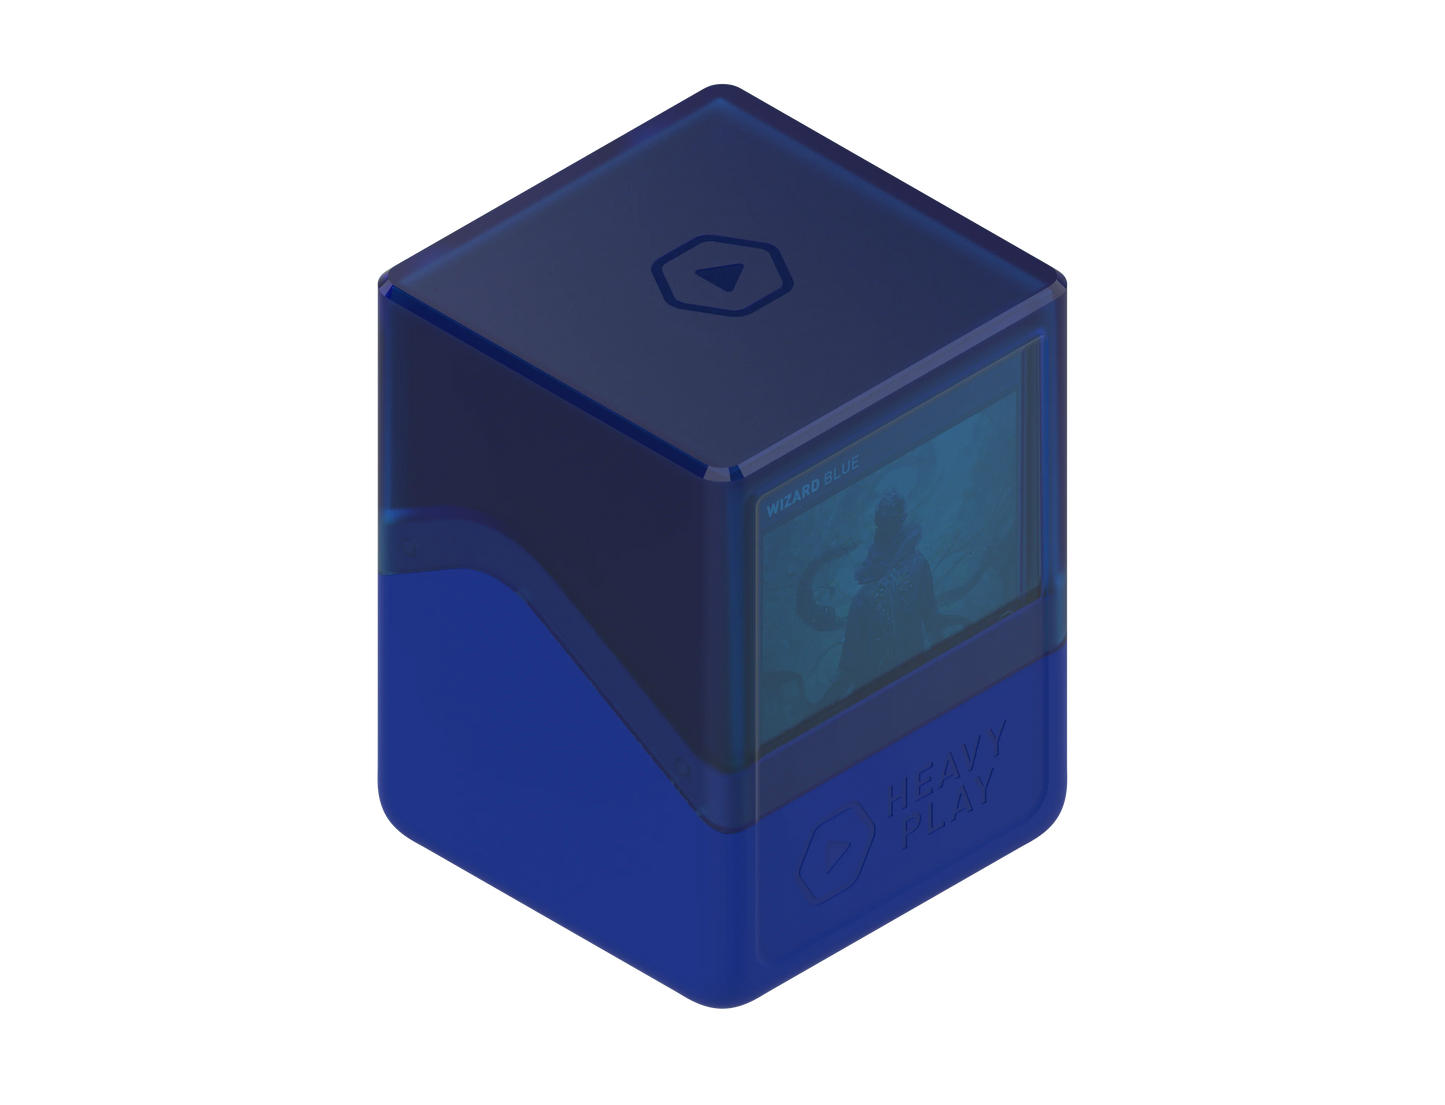 RFG Deckbox - Wizard Blue